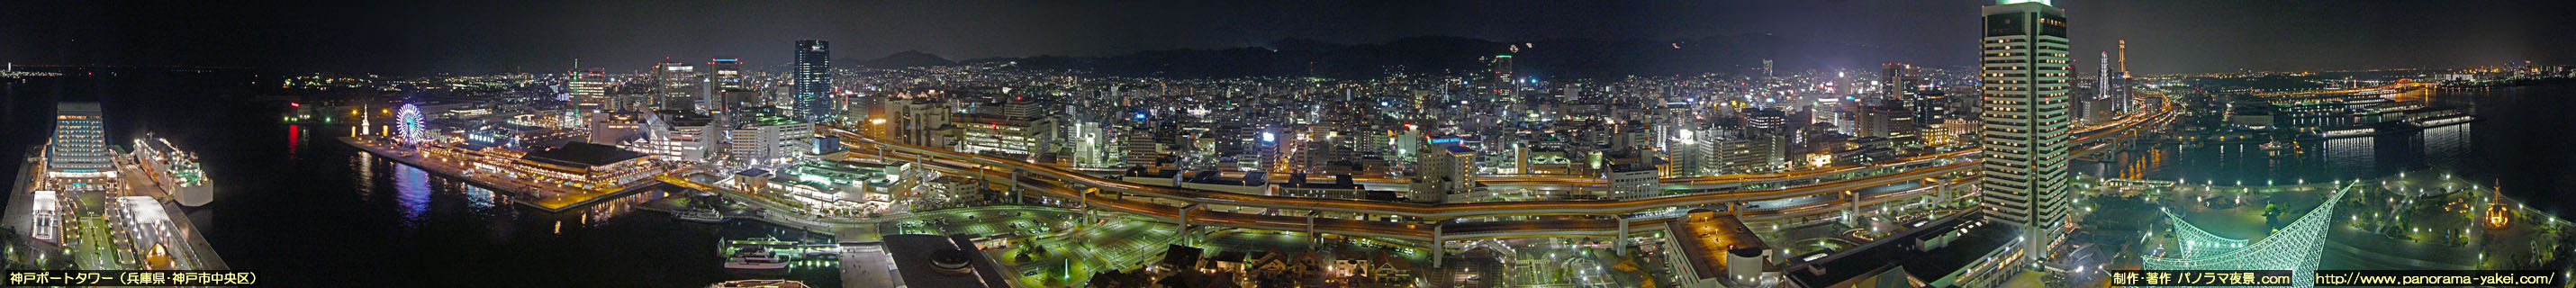 神戸ポートタワー5階展望台からの360度パノラマ夜景写真